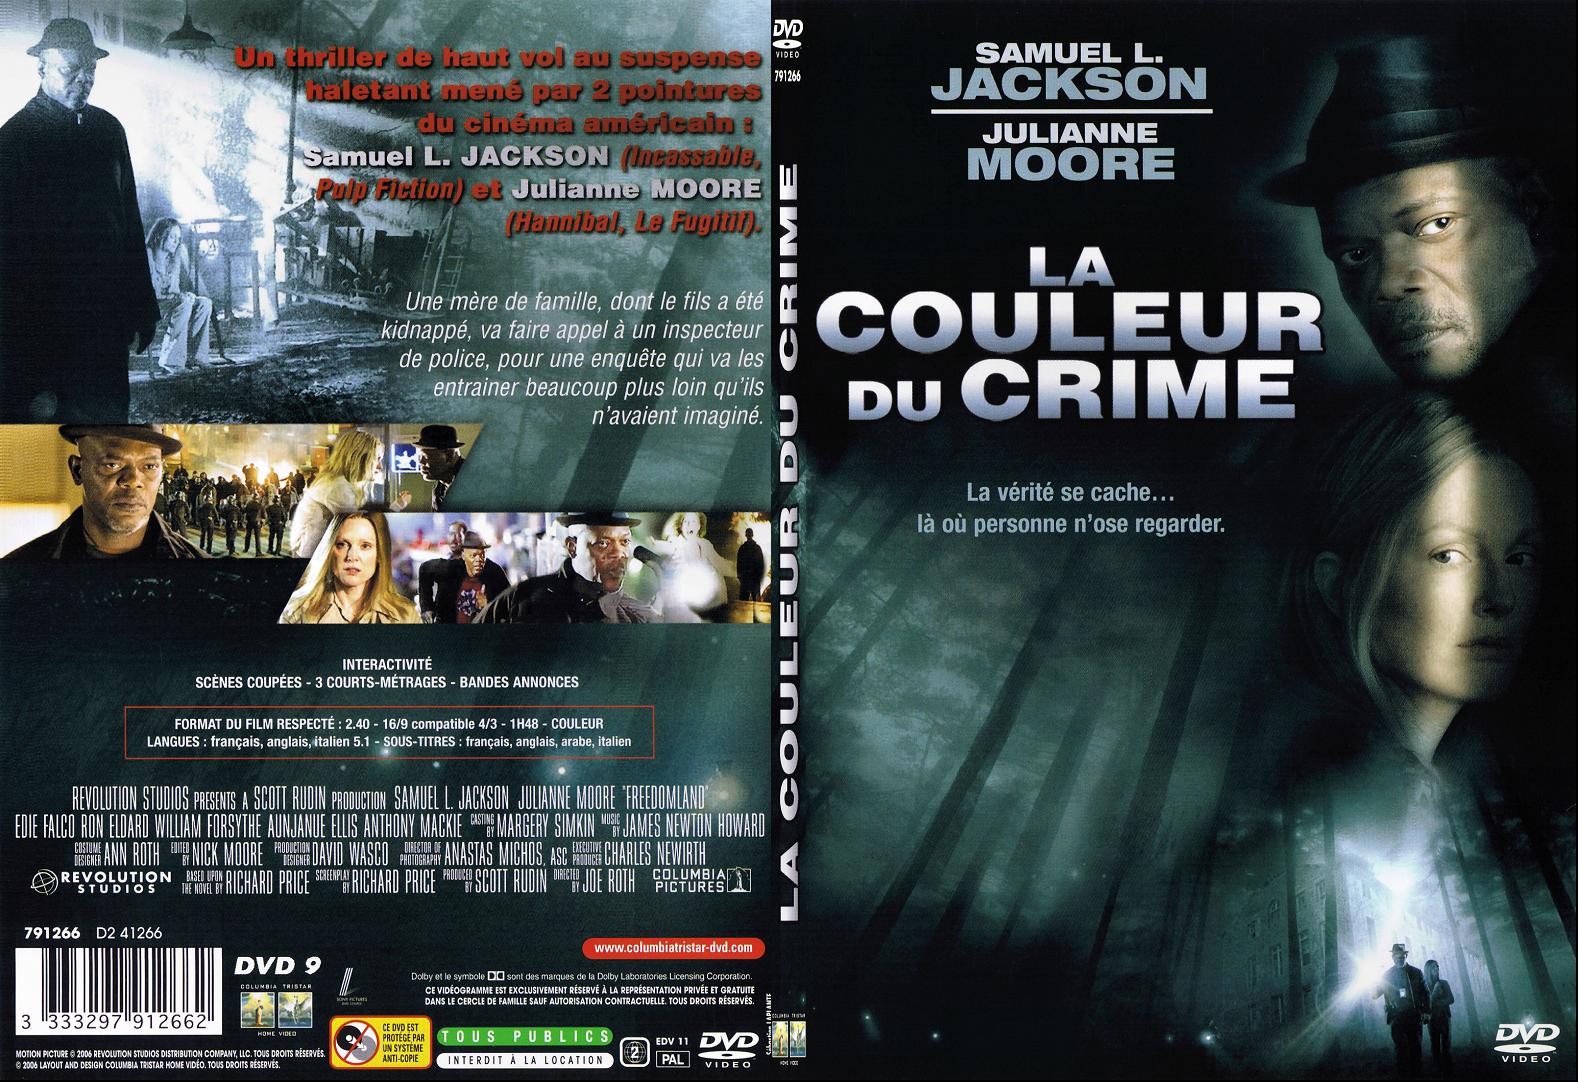 Jaquette DVD La couleur du crime - SLIM